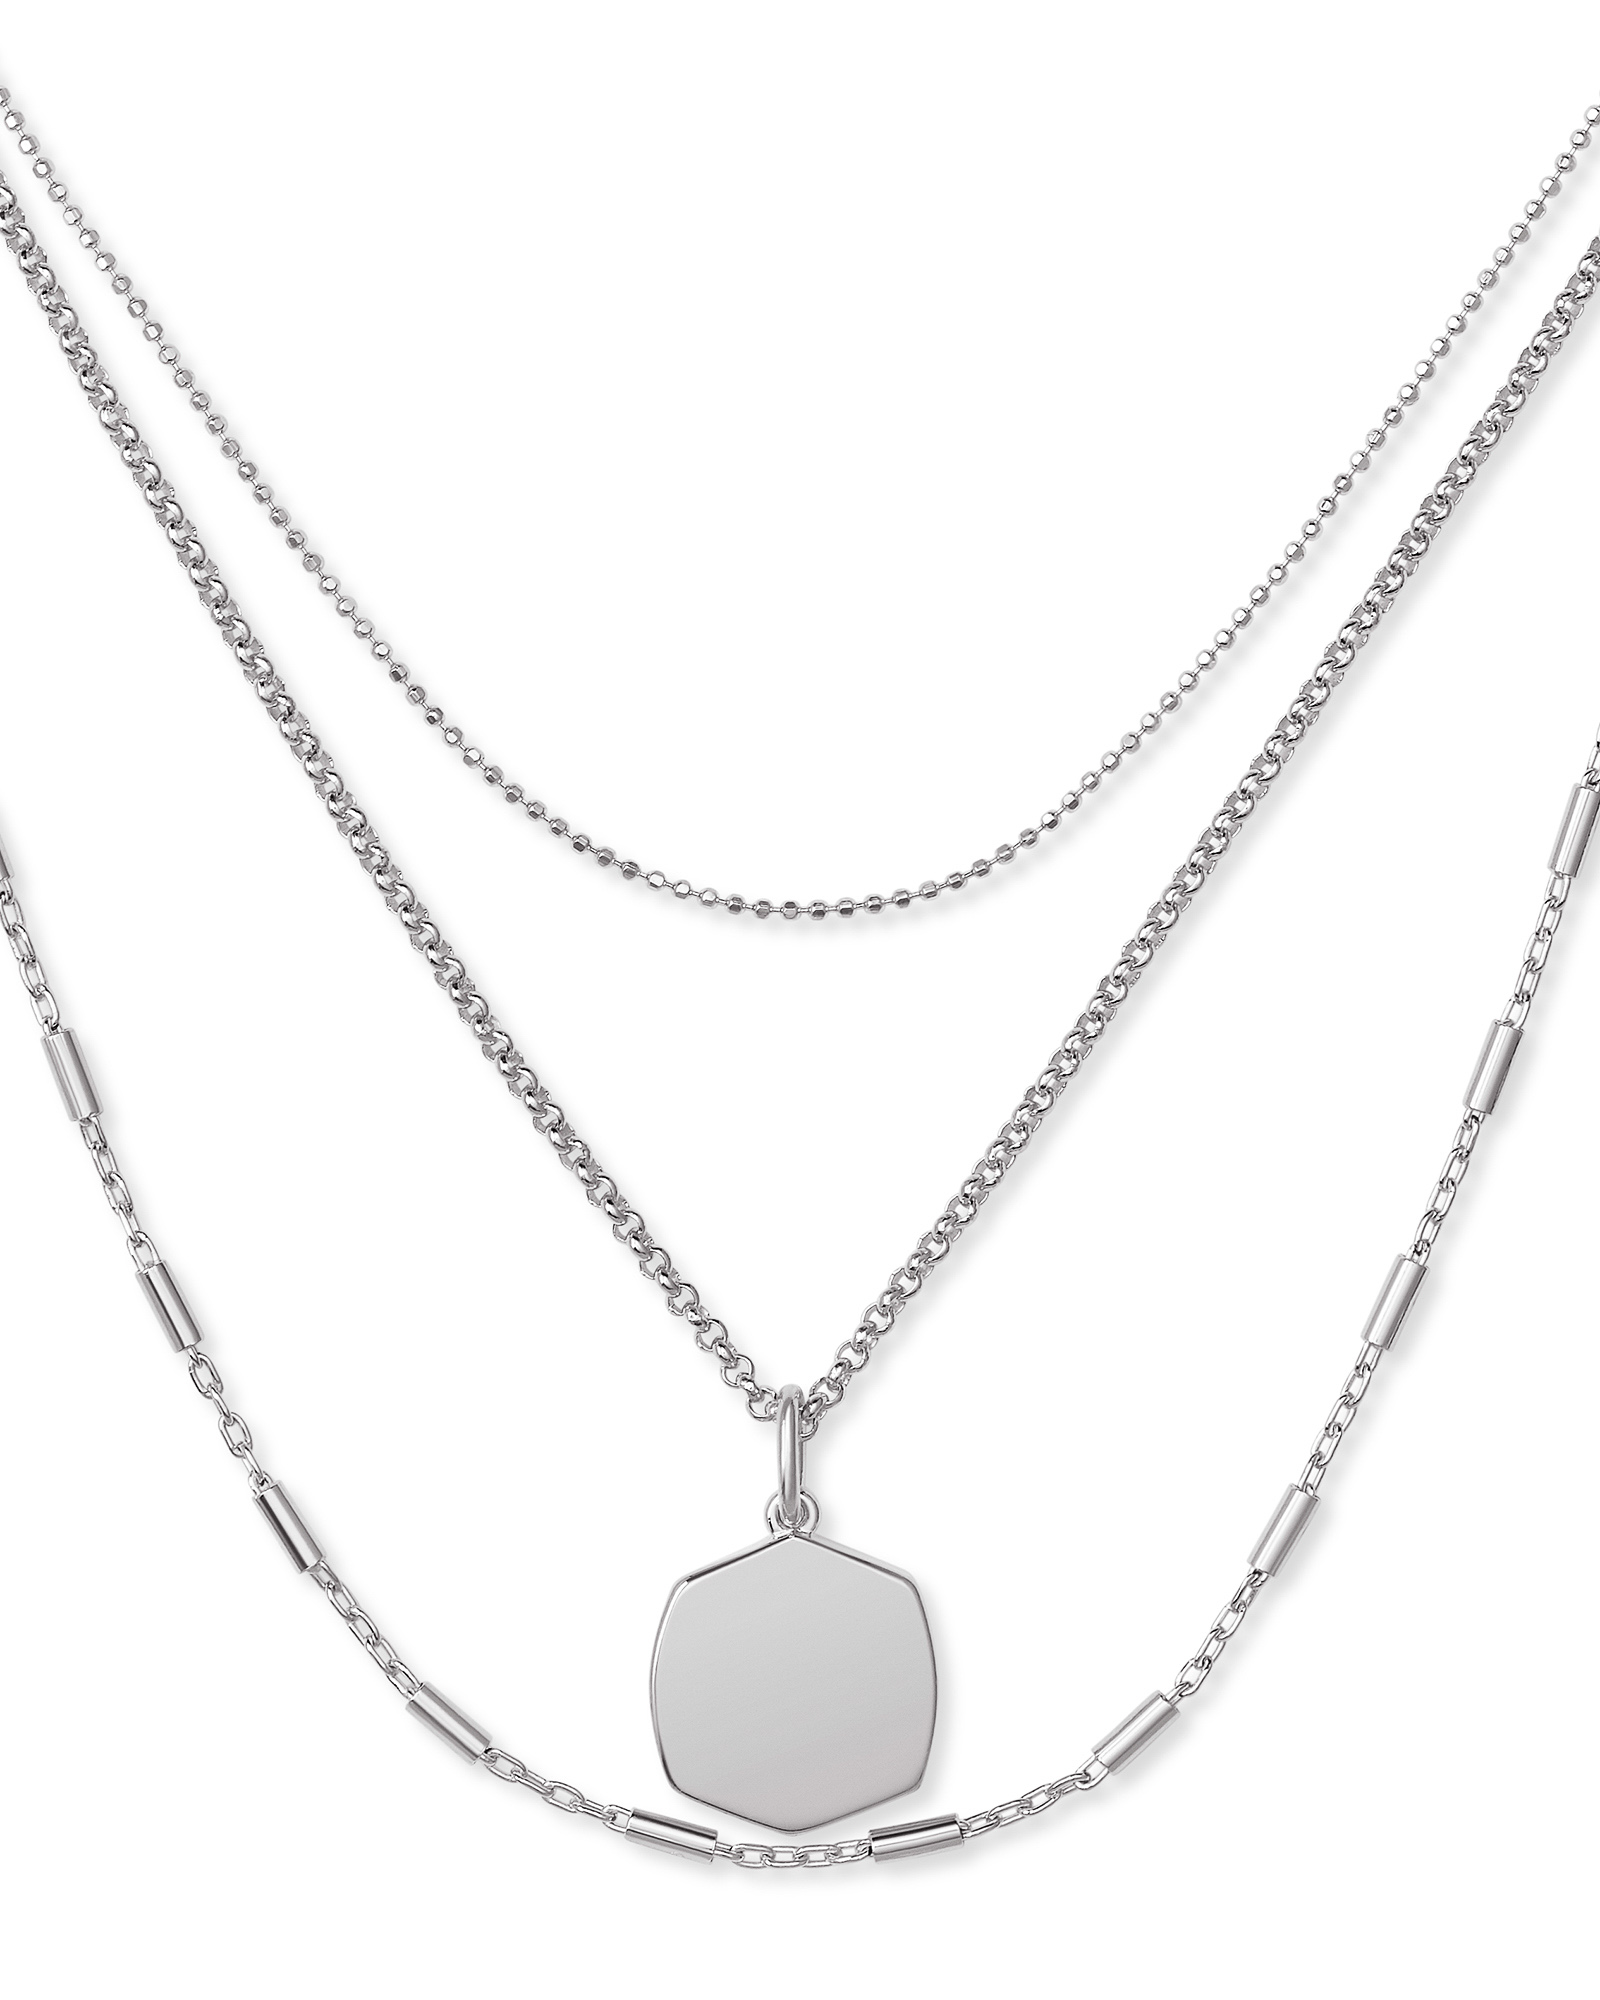 Davis Triple Strand Necklace in Sterling Silver | Kendra Scott